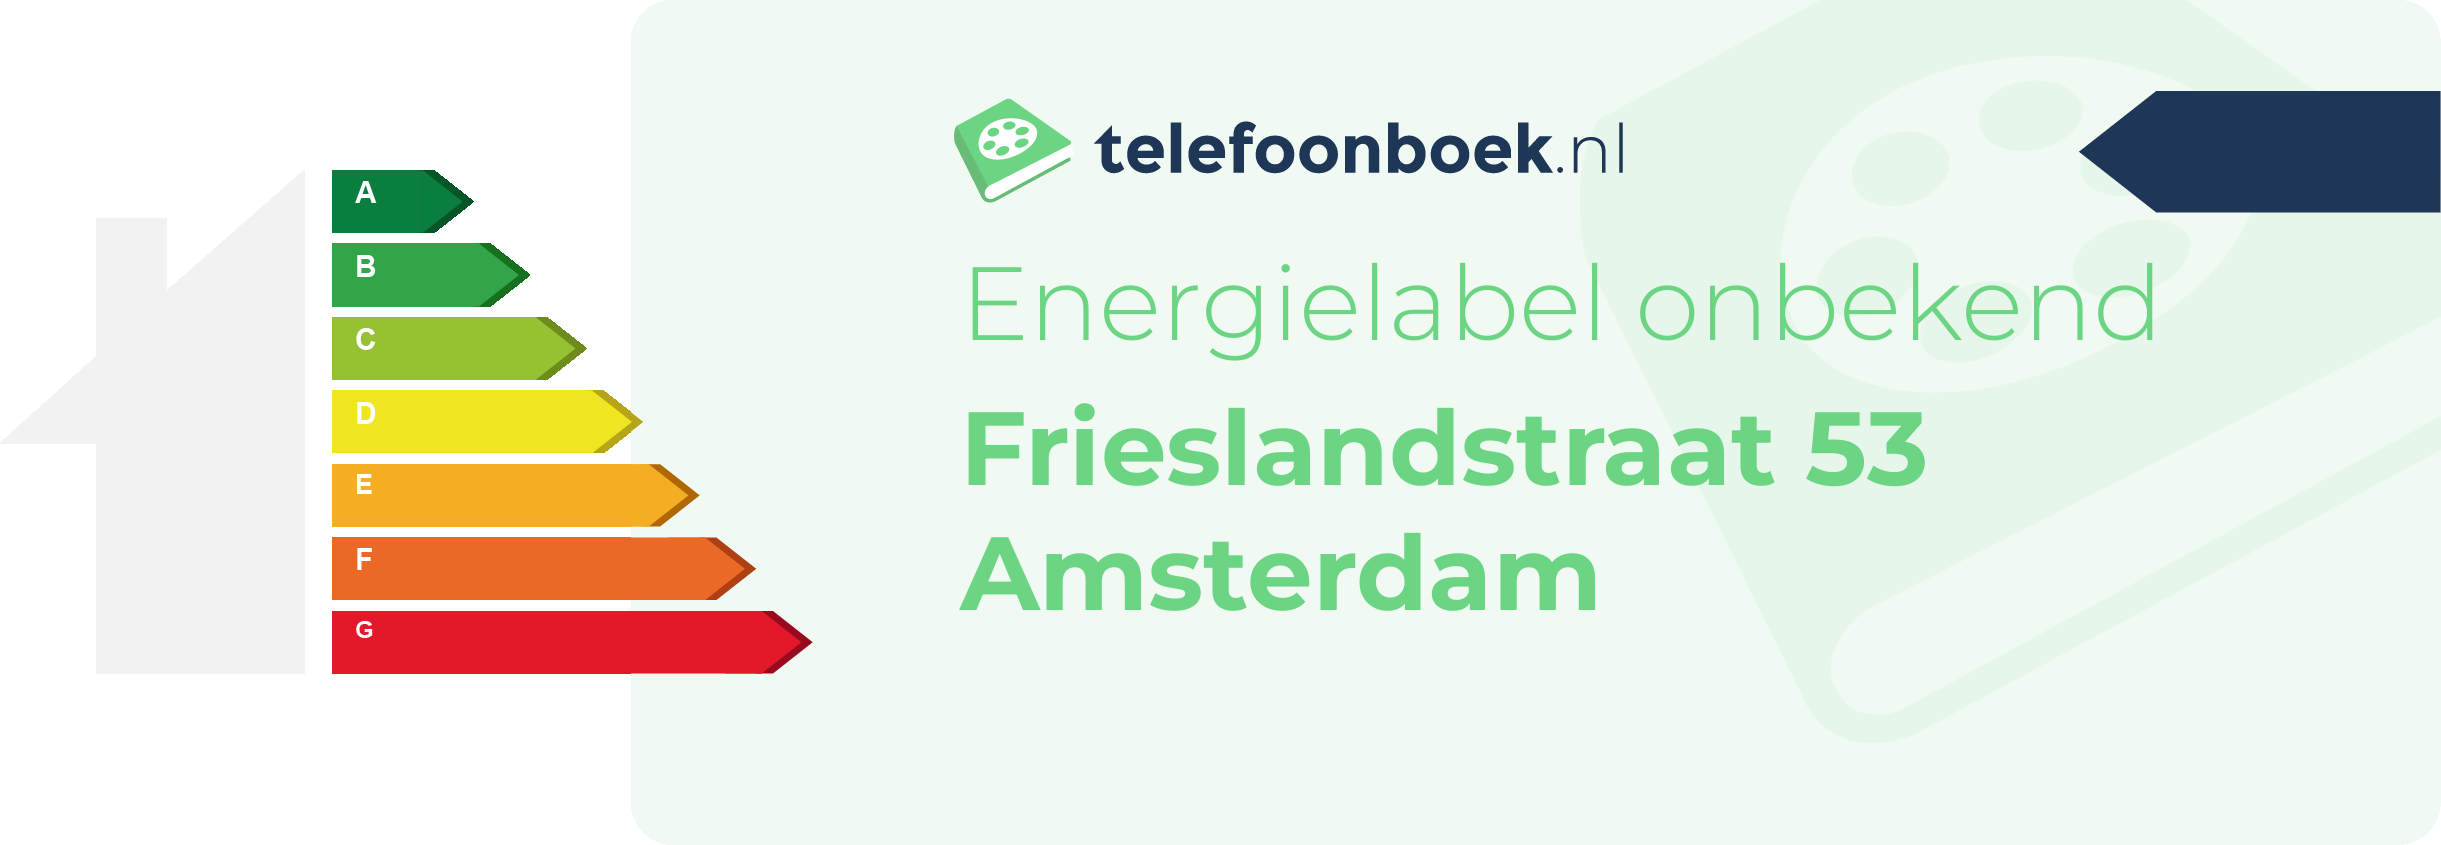 Energielabel Frieslandstraat 53 Amsterdam